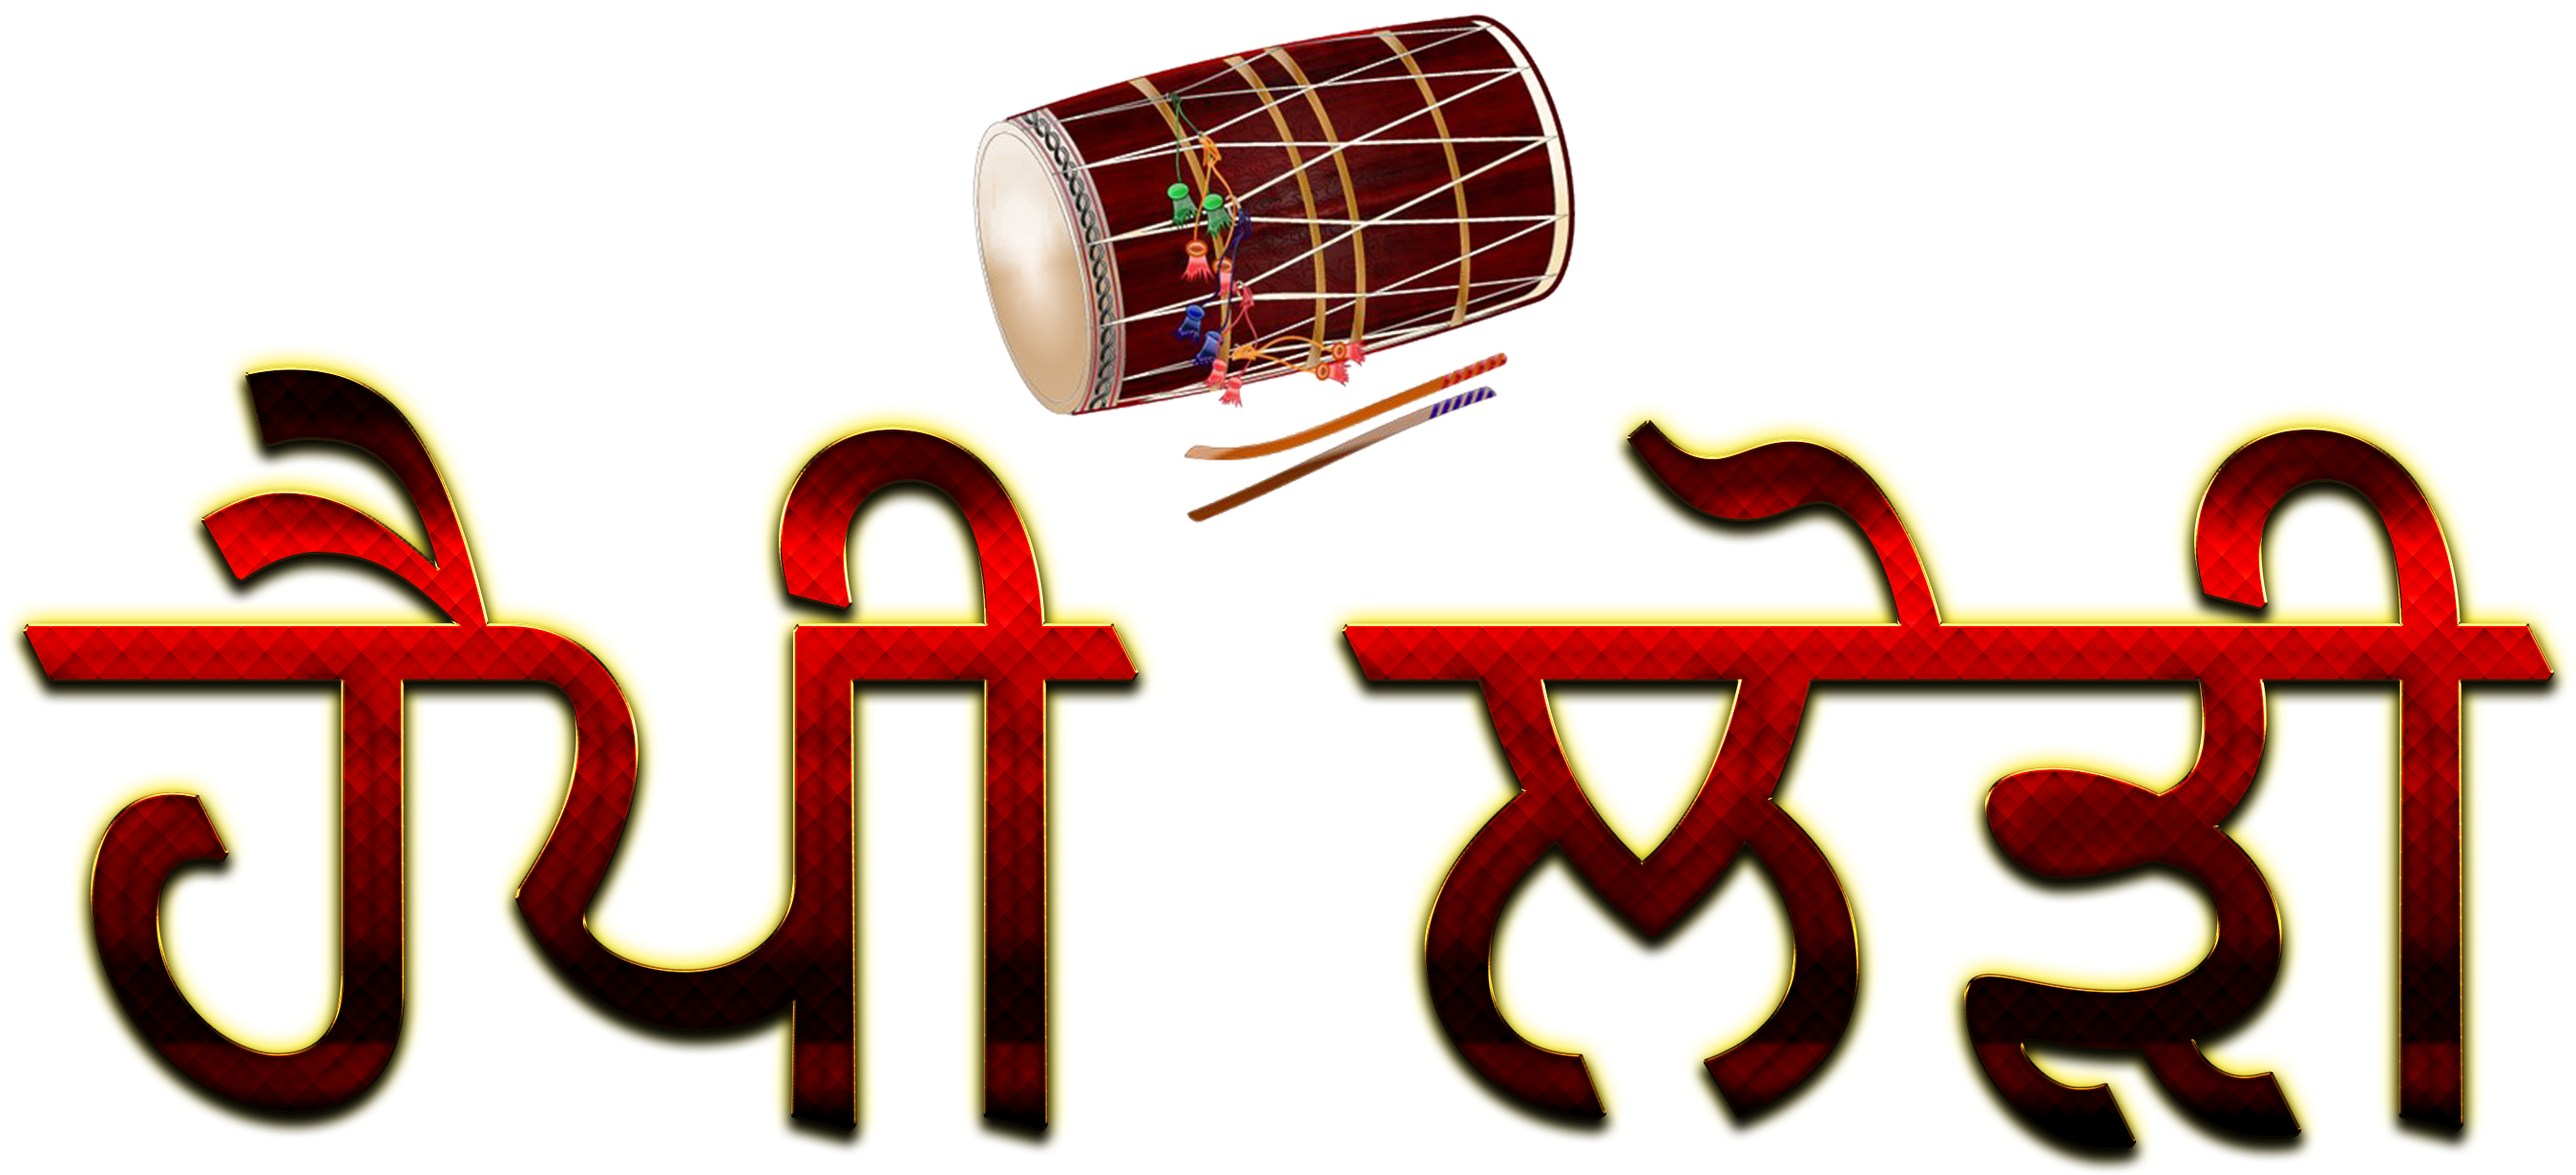 Happy Lohri Punjabi Font Png Hd - Happy Lohri Hd Image In Punjabi Clipart (2730x1260), Png Download